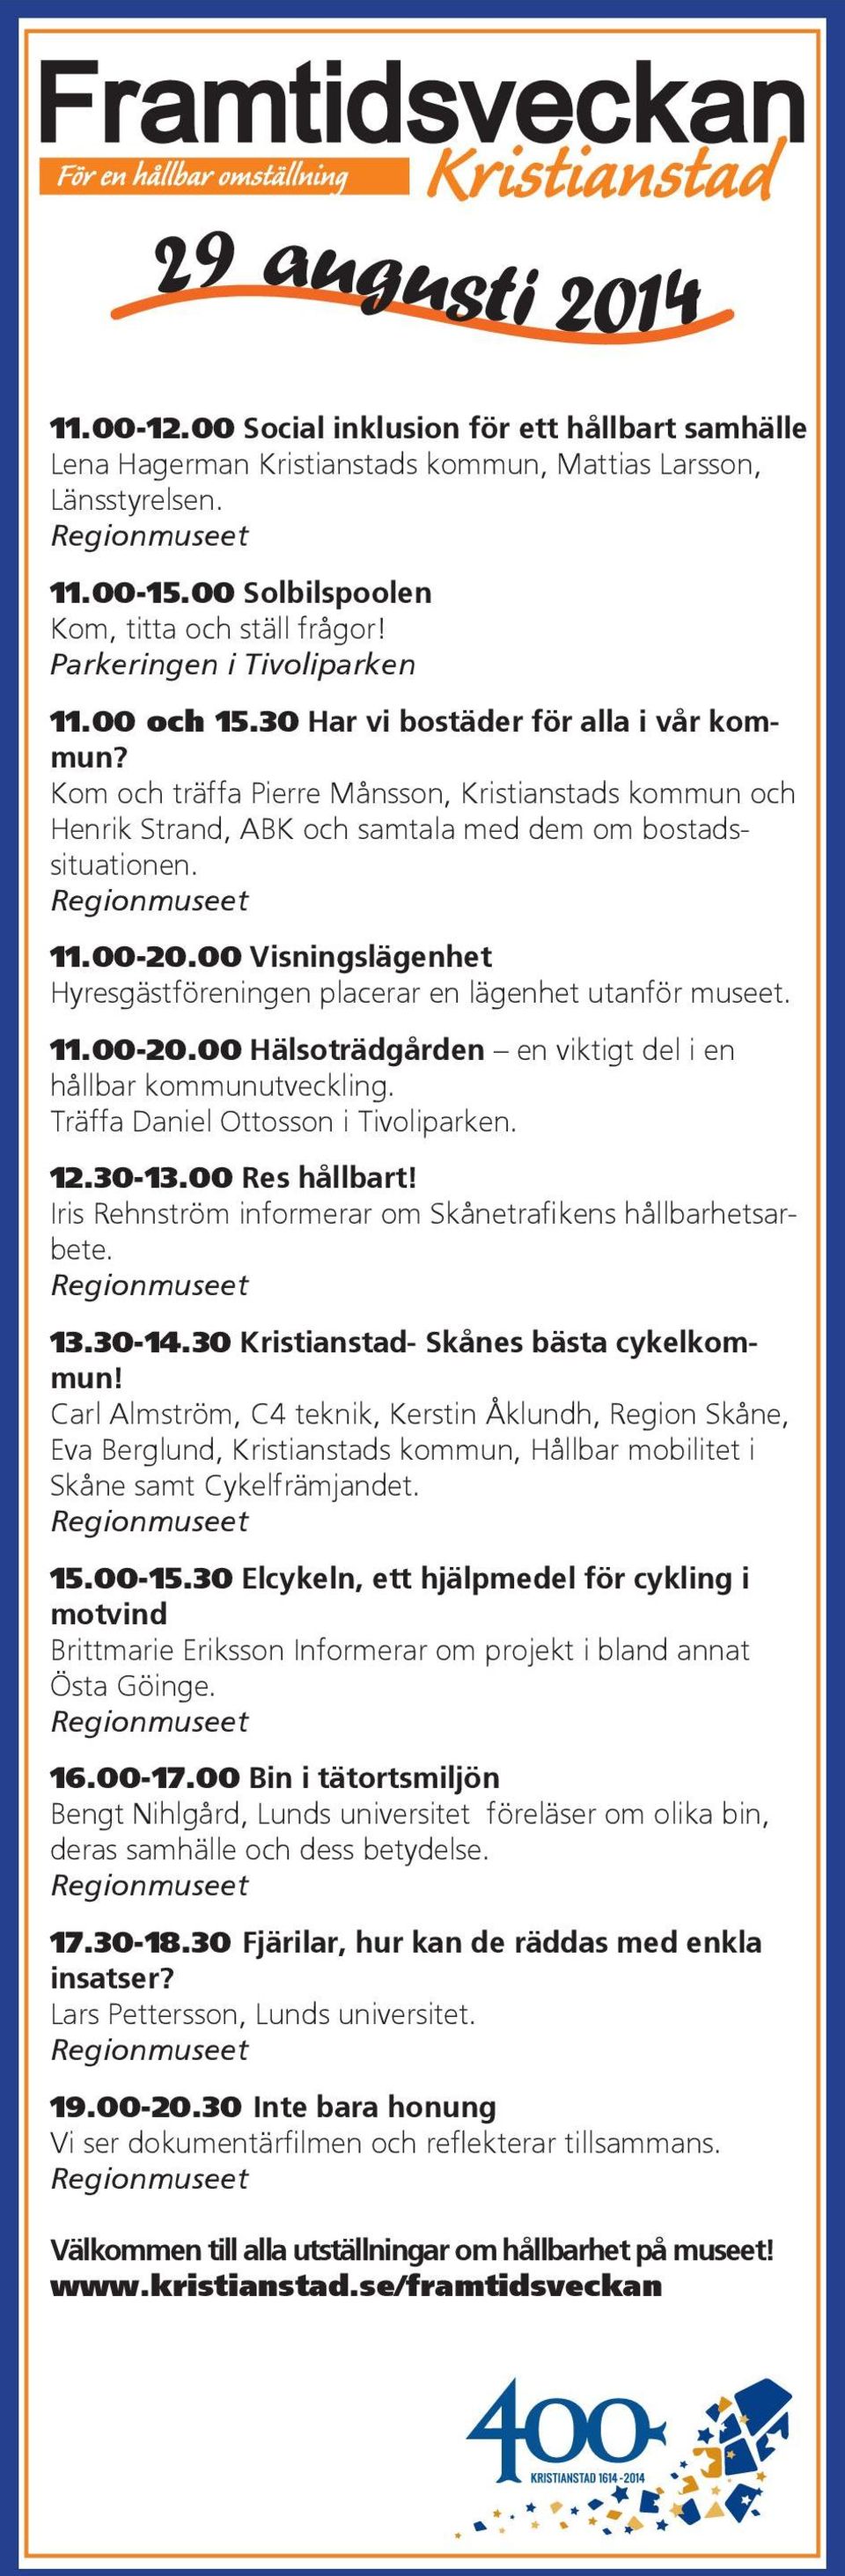 11.00-20.00 Visningslägenhet Hyresgästföreningen placerar en lägenhet utanför museet. 11.00-20.00 Hälsoträdgården en viktigt del i en hållbar kommunutveckling. Träffa Daniel Ottosson i Tivoliparken.